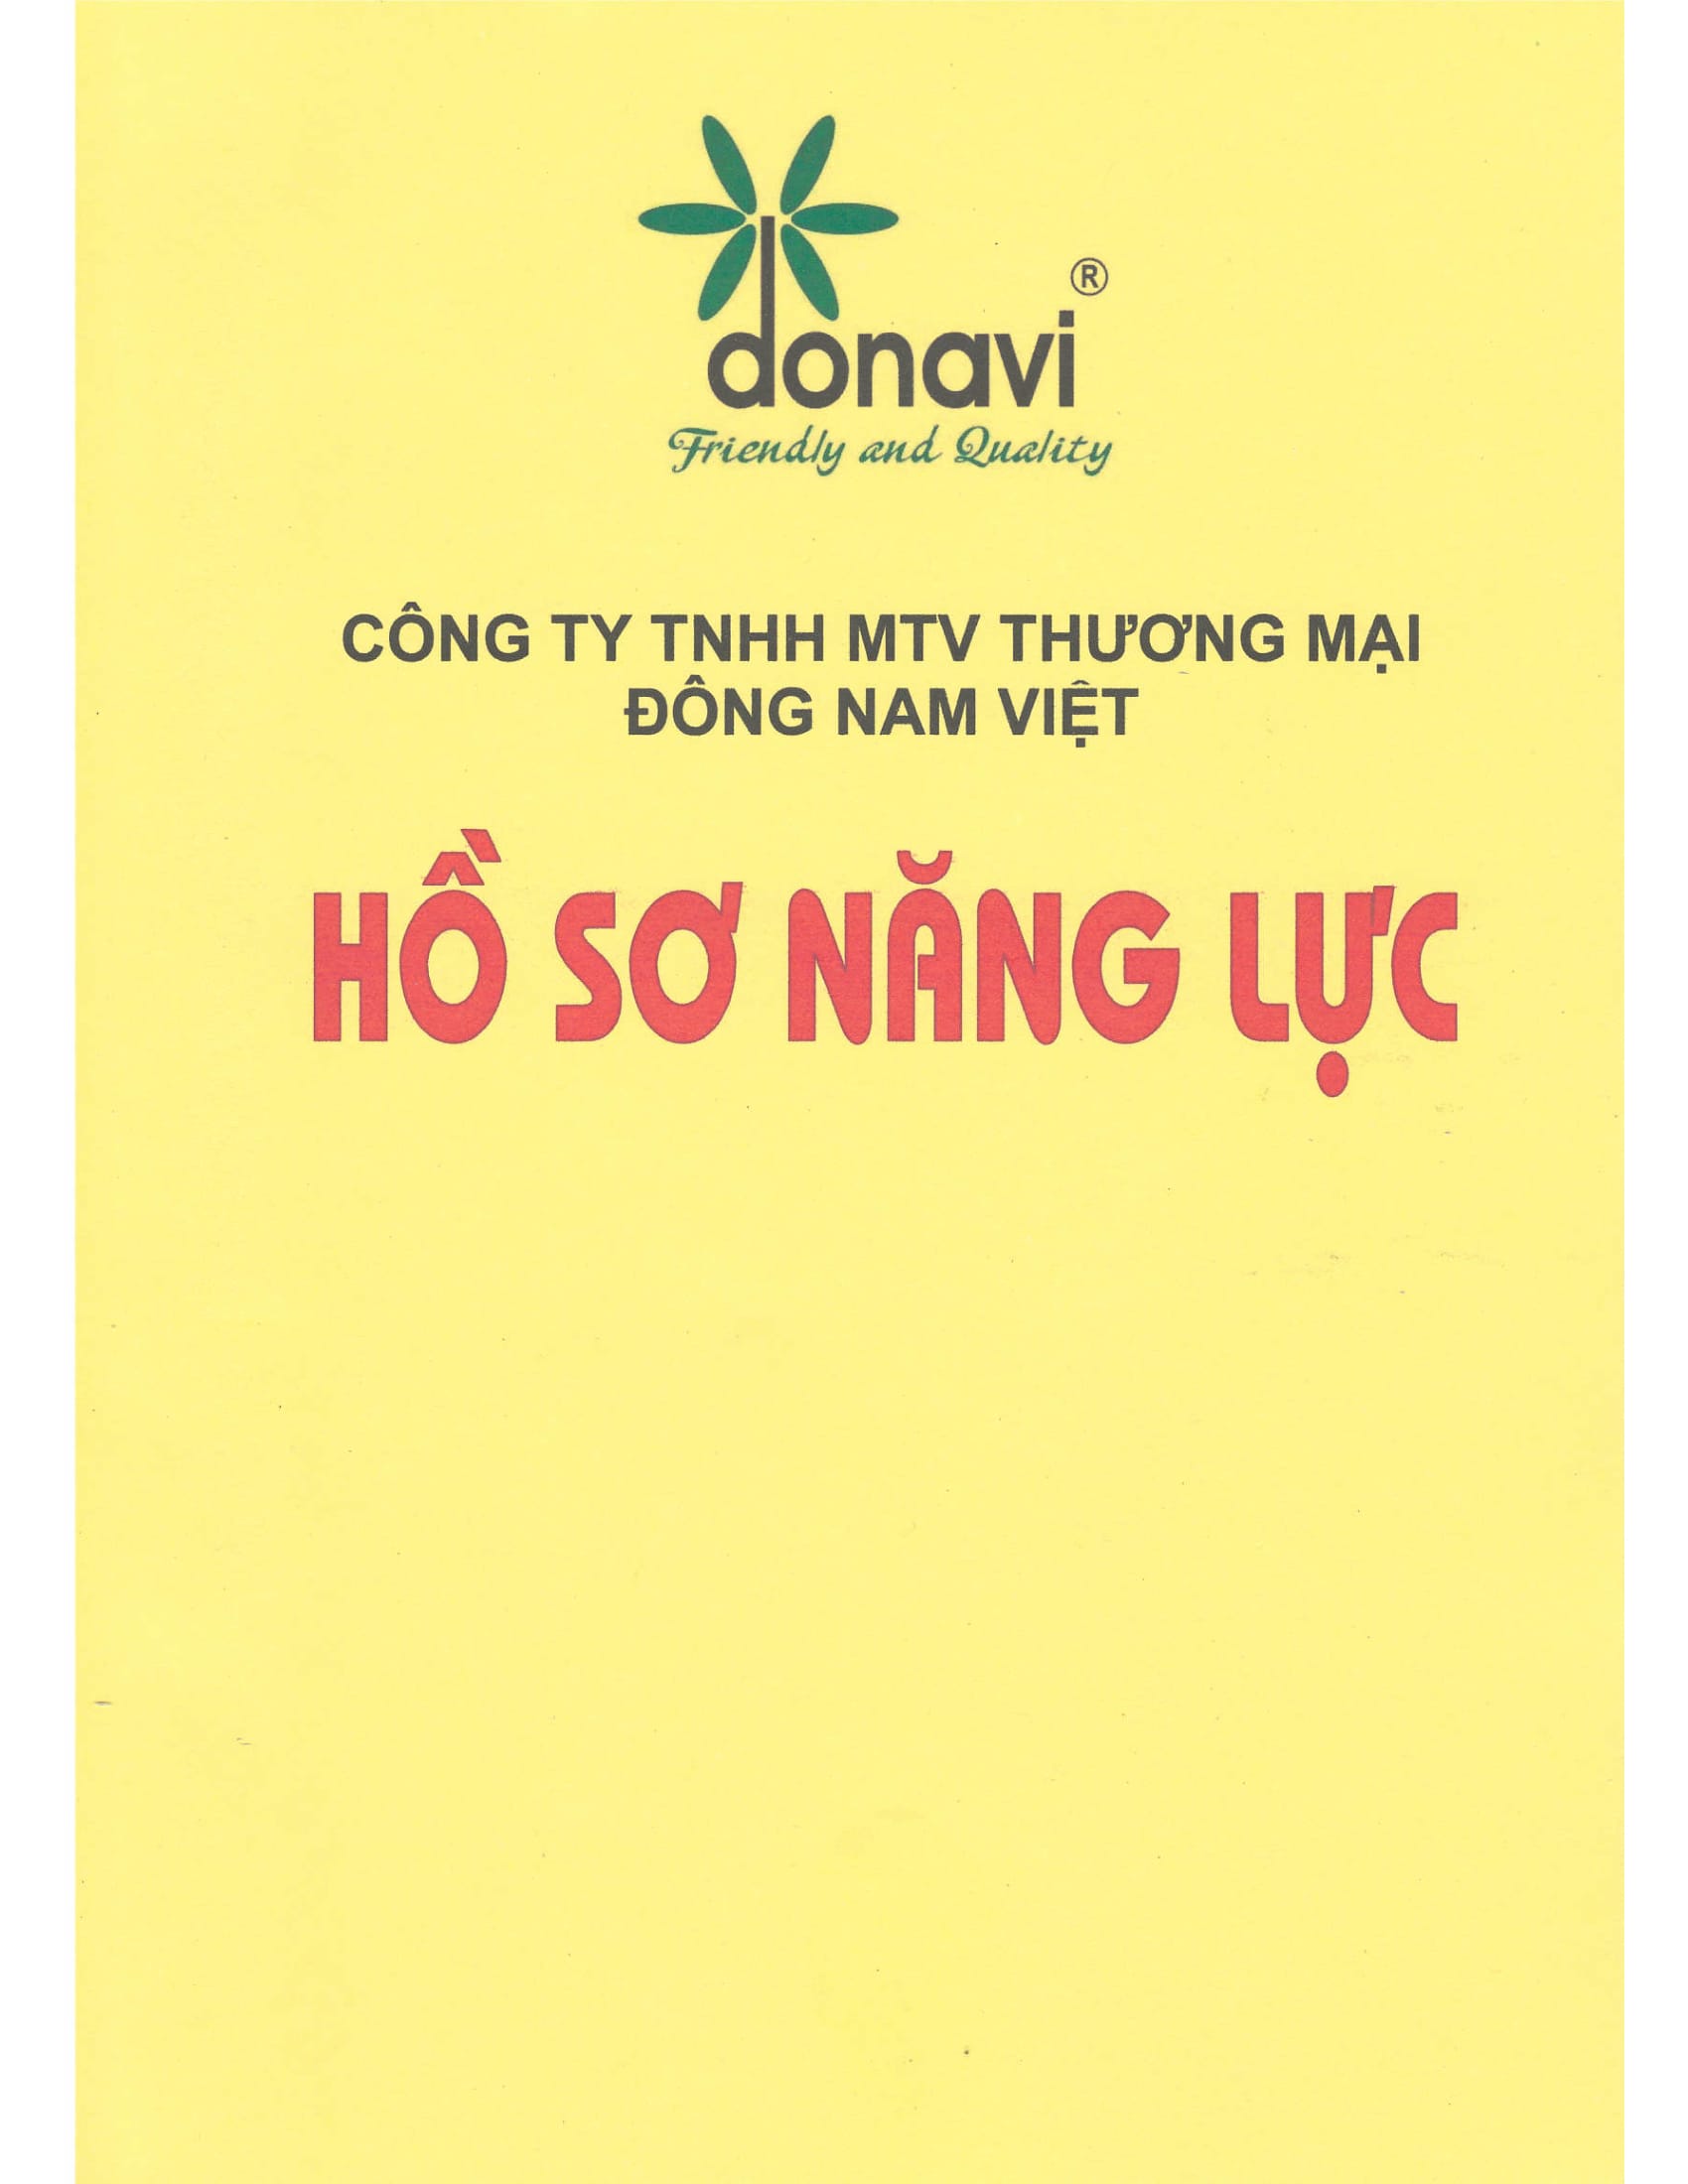 Hồ sơ năng lực của công ty TNHH MTV thương mại Đông Nam Việt